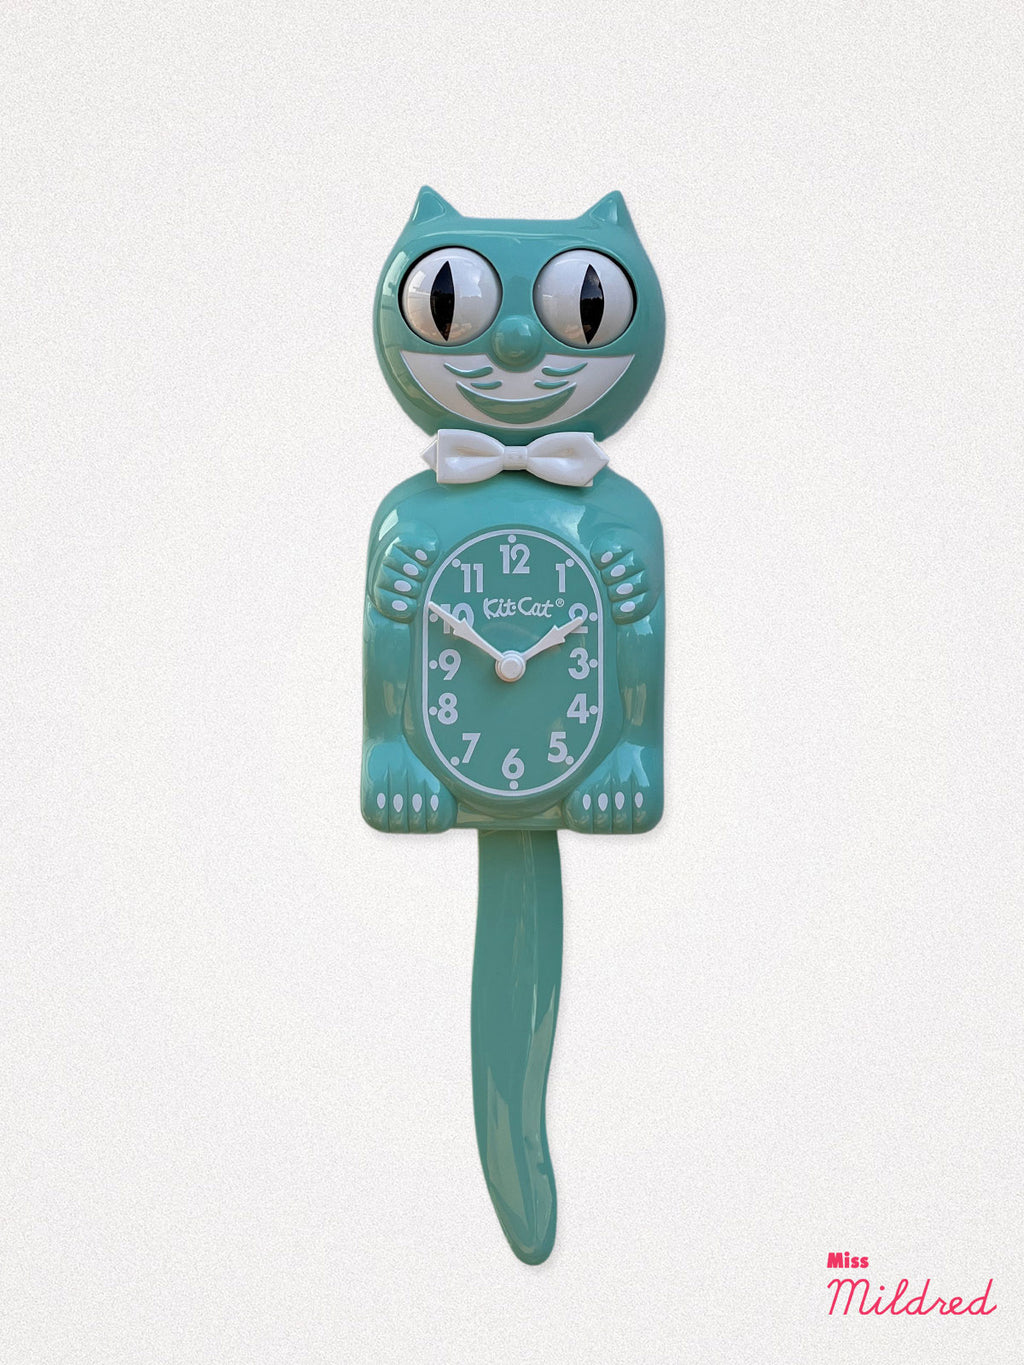 Kit Cat Clock - Original Large Size - Ocean Green